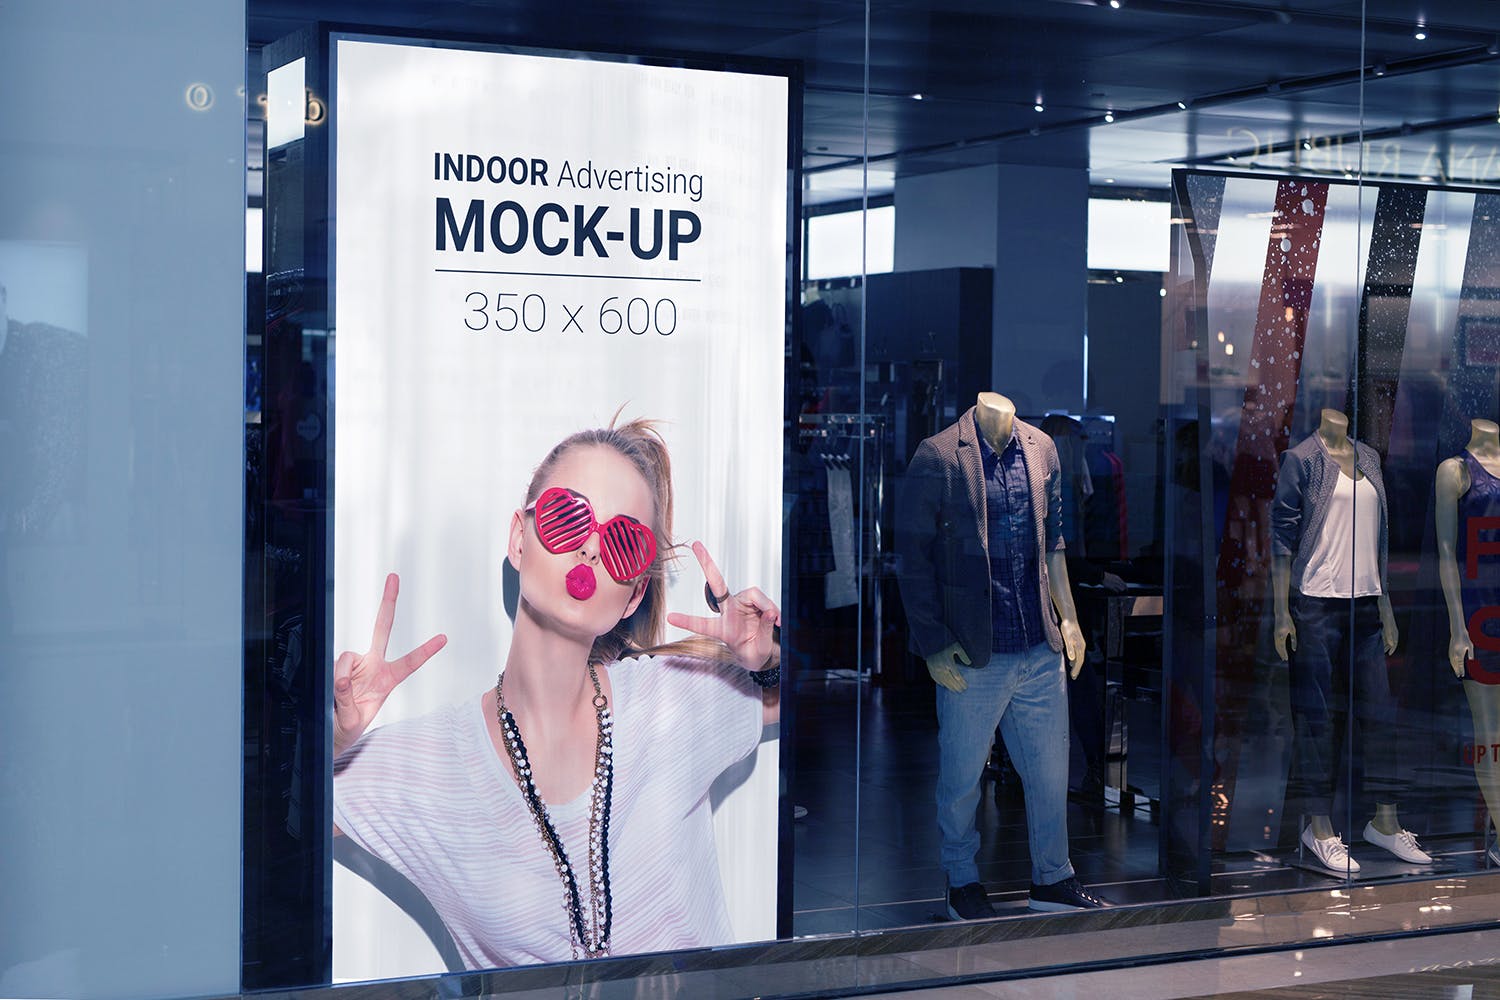 室内广告牌图片效果图样机模板 Indoor Advertising Mock-Up插图(9)